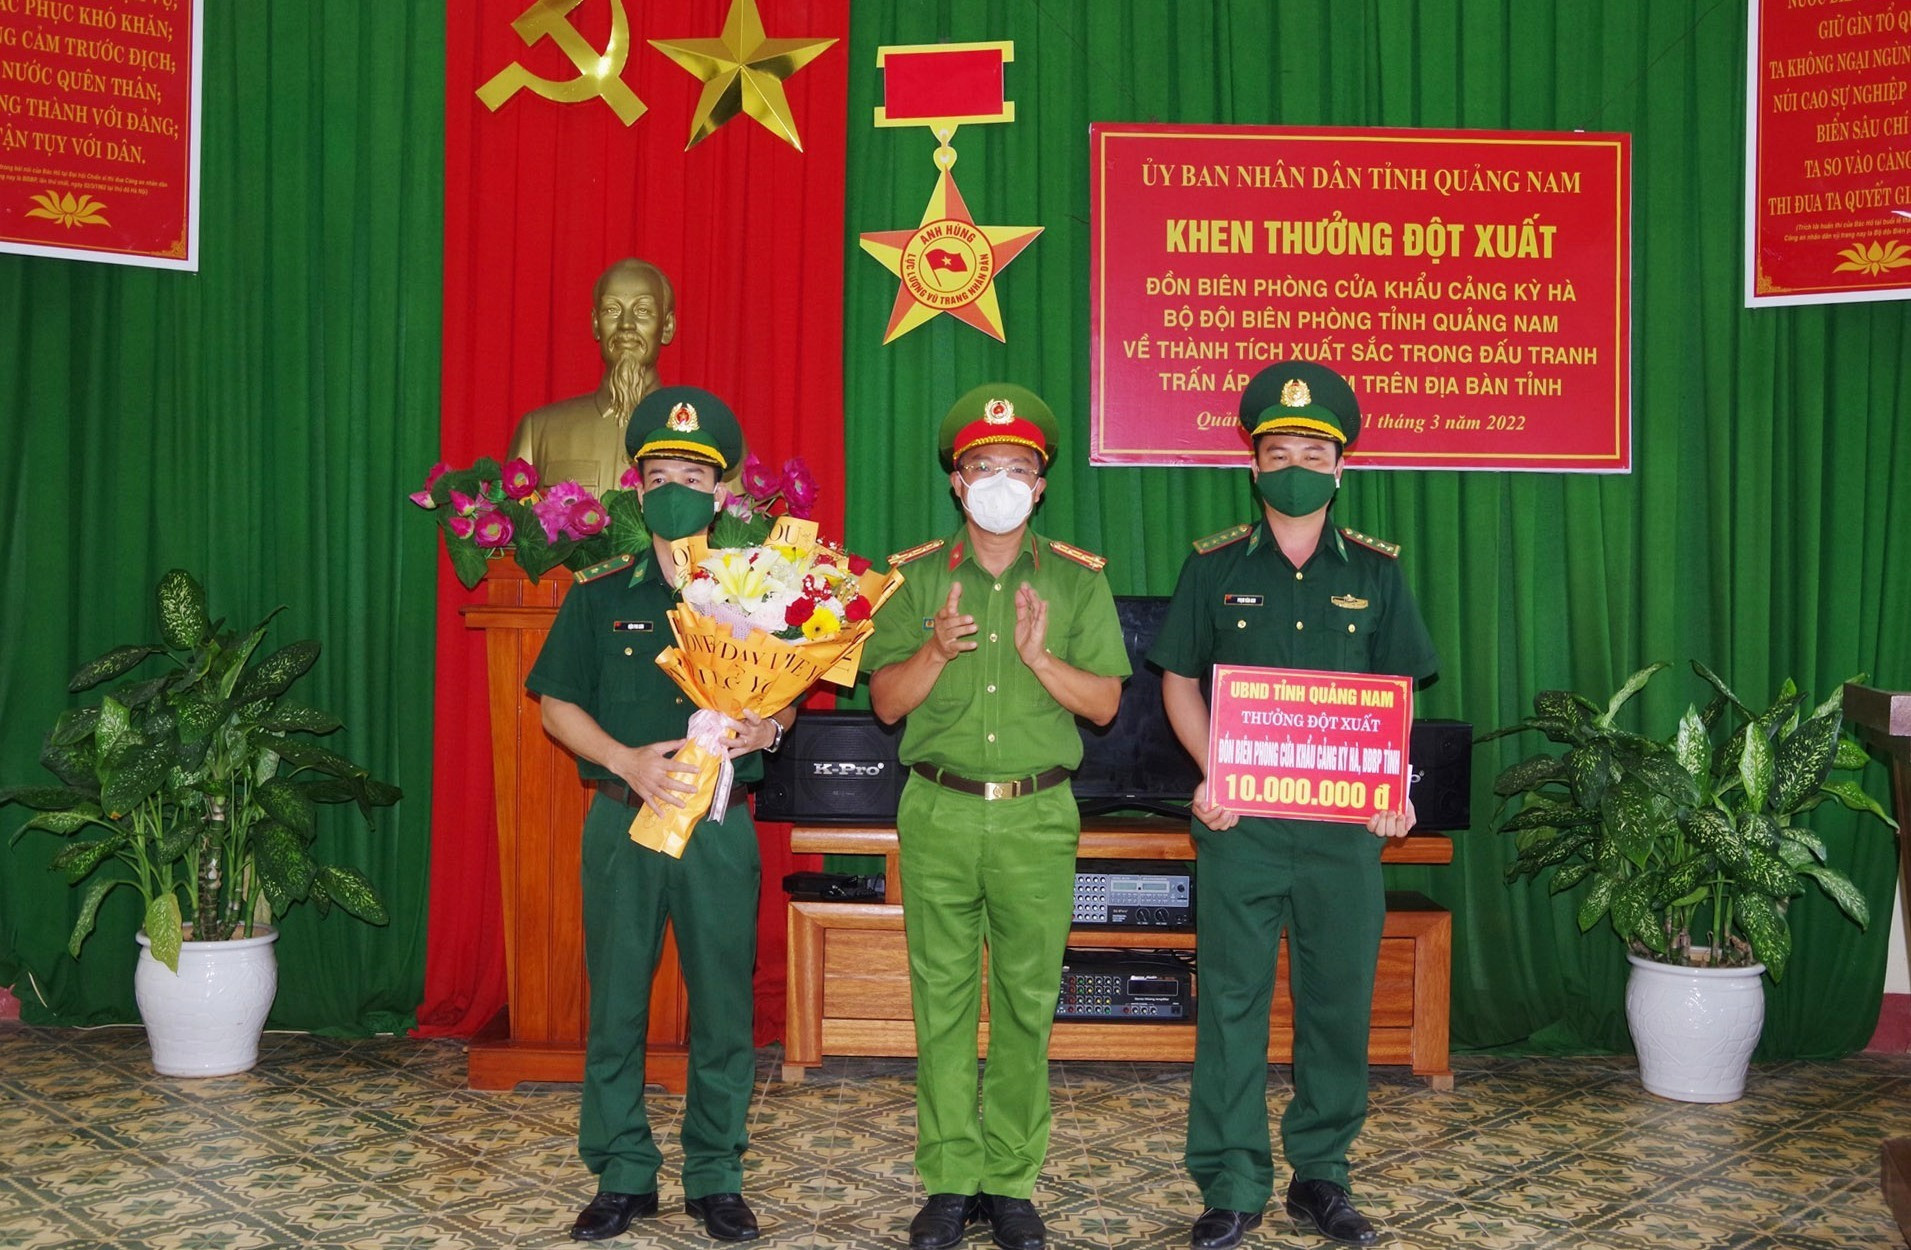 Đại tá Nguyễn Hà Lai – Phó Giám đốc Công an tỉnh trao thưởng cho Đồn Biên phòng Cửa khẩu cảng Kỳ Hà. Ảnh: HUỲNH CHÍN